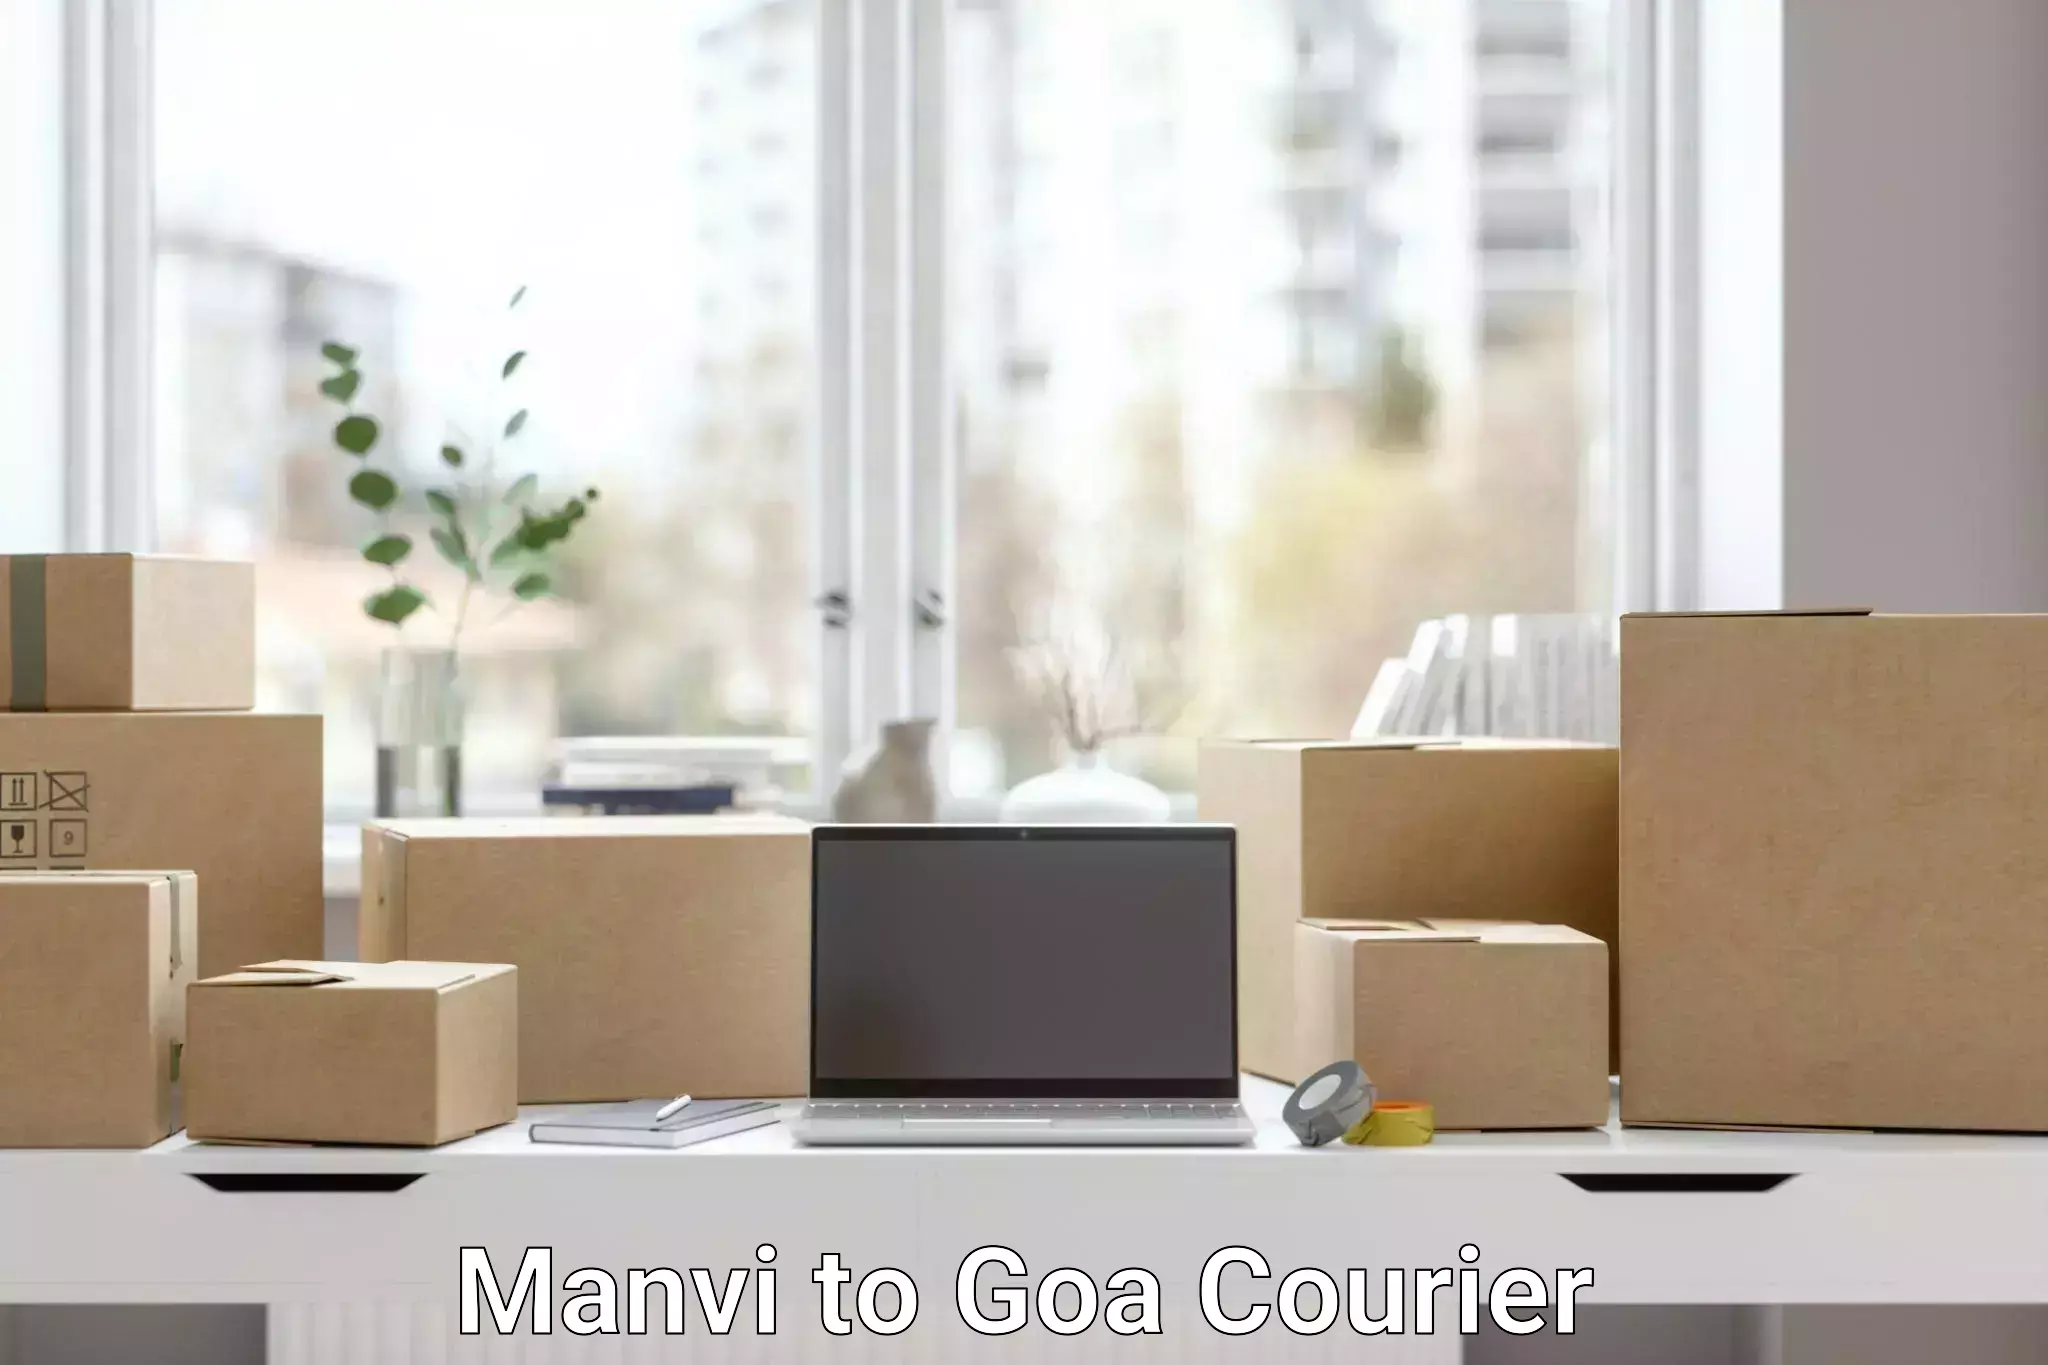 Digital courier platforms Manvi to Goa